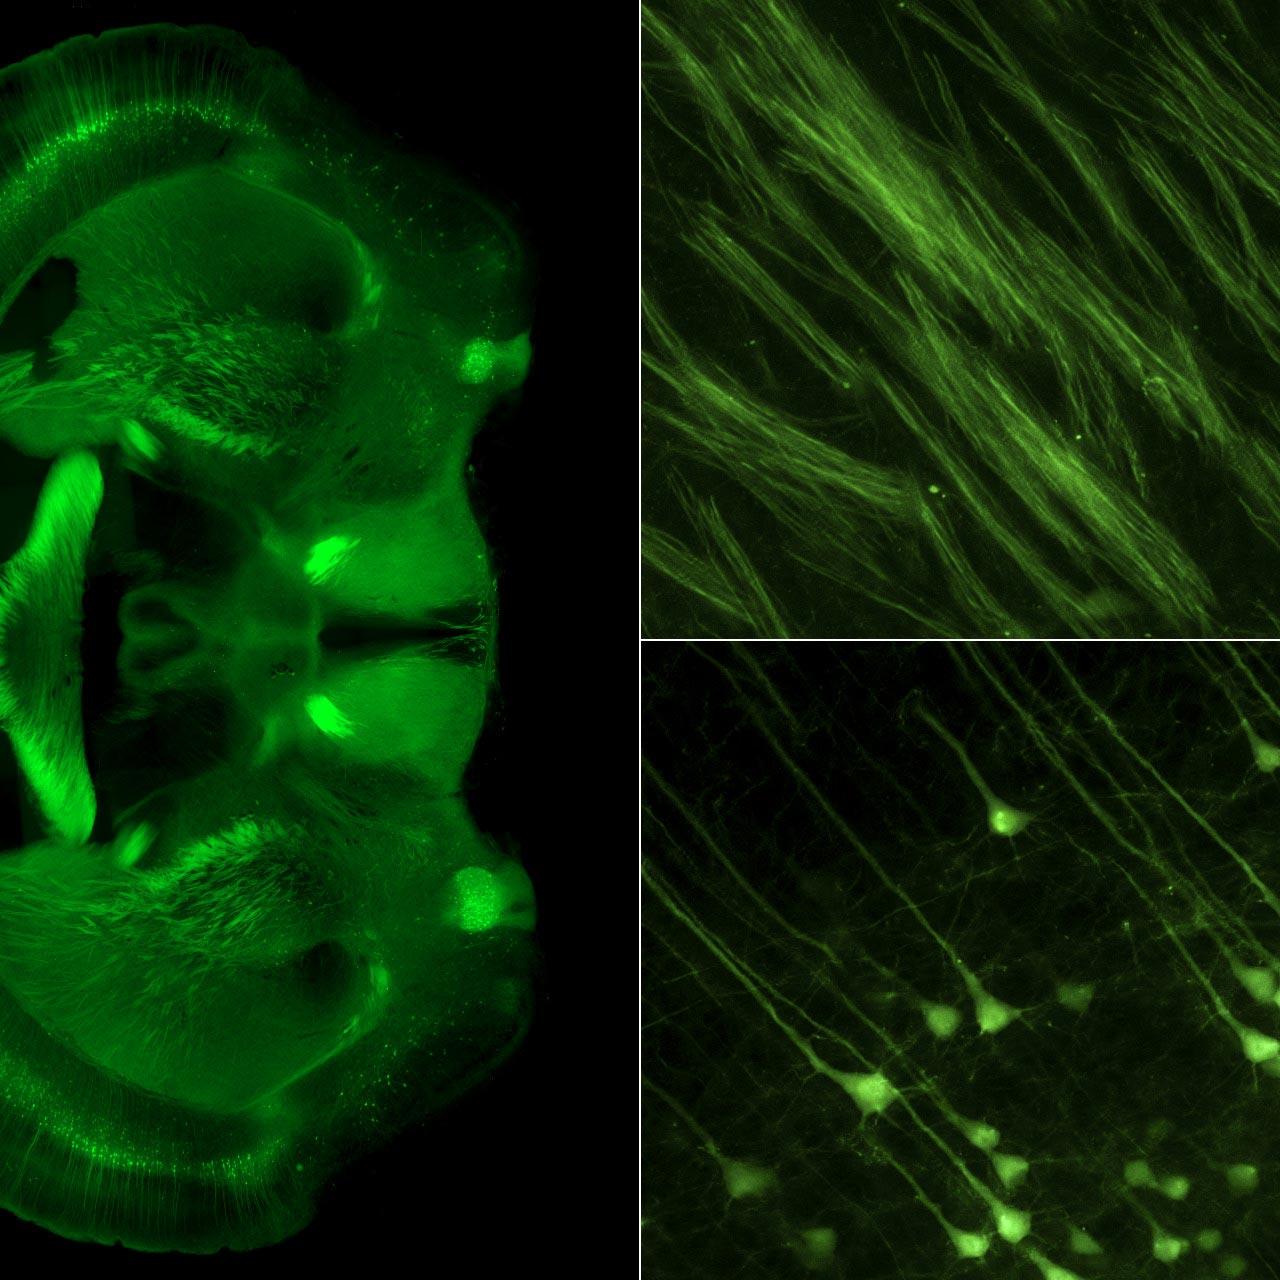 Microscopía de expansión en el cerebro de un ratón. Izquierda: cerebro entero; arriba derecha: haces de axones; abajo derecha: células piramidales.